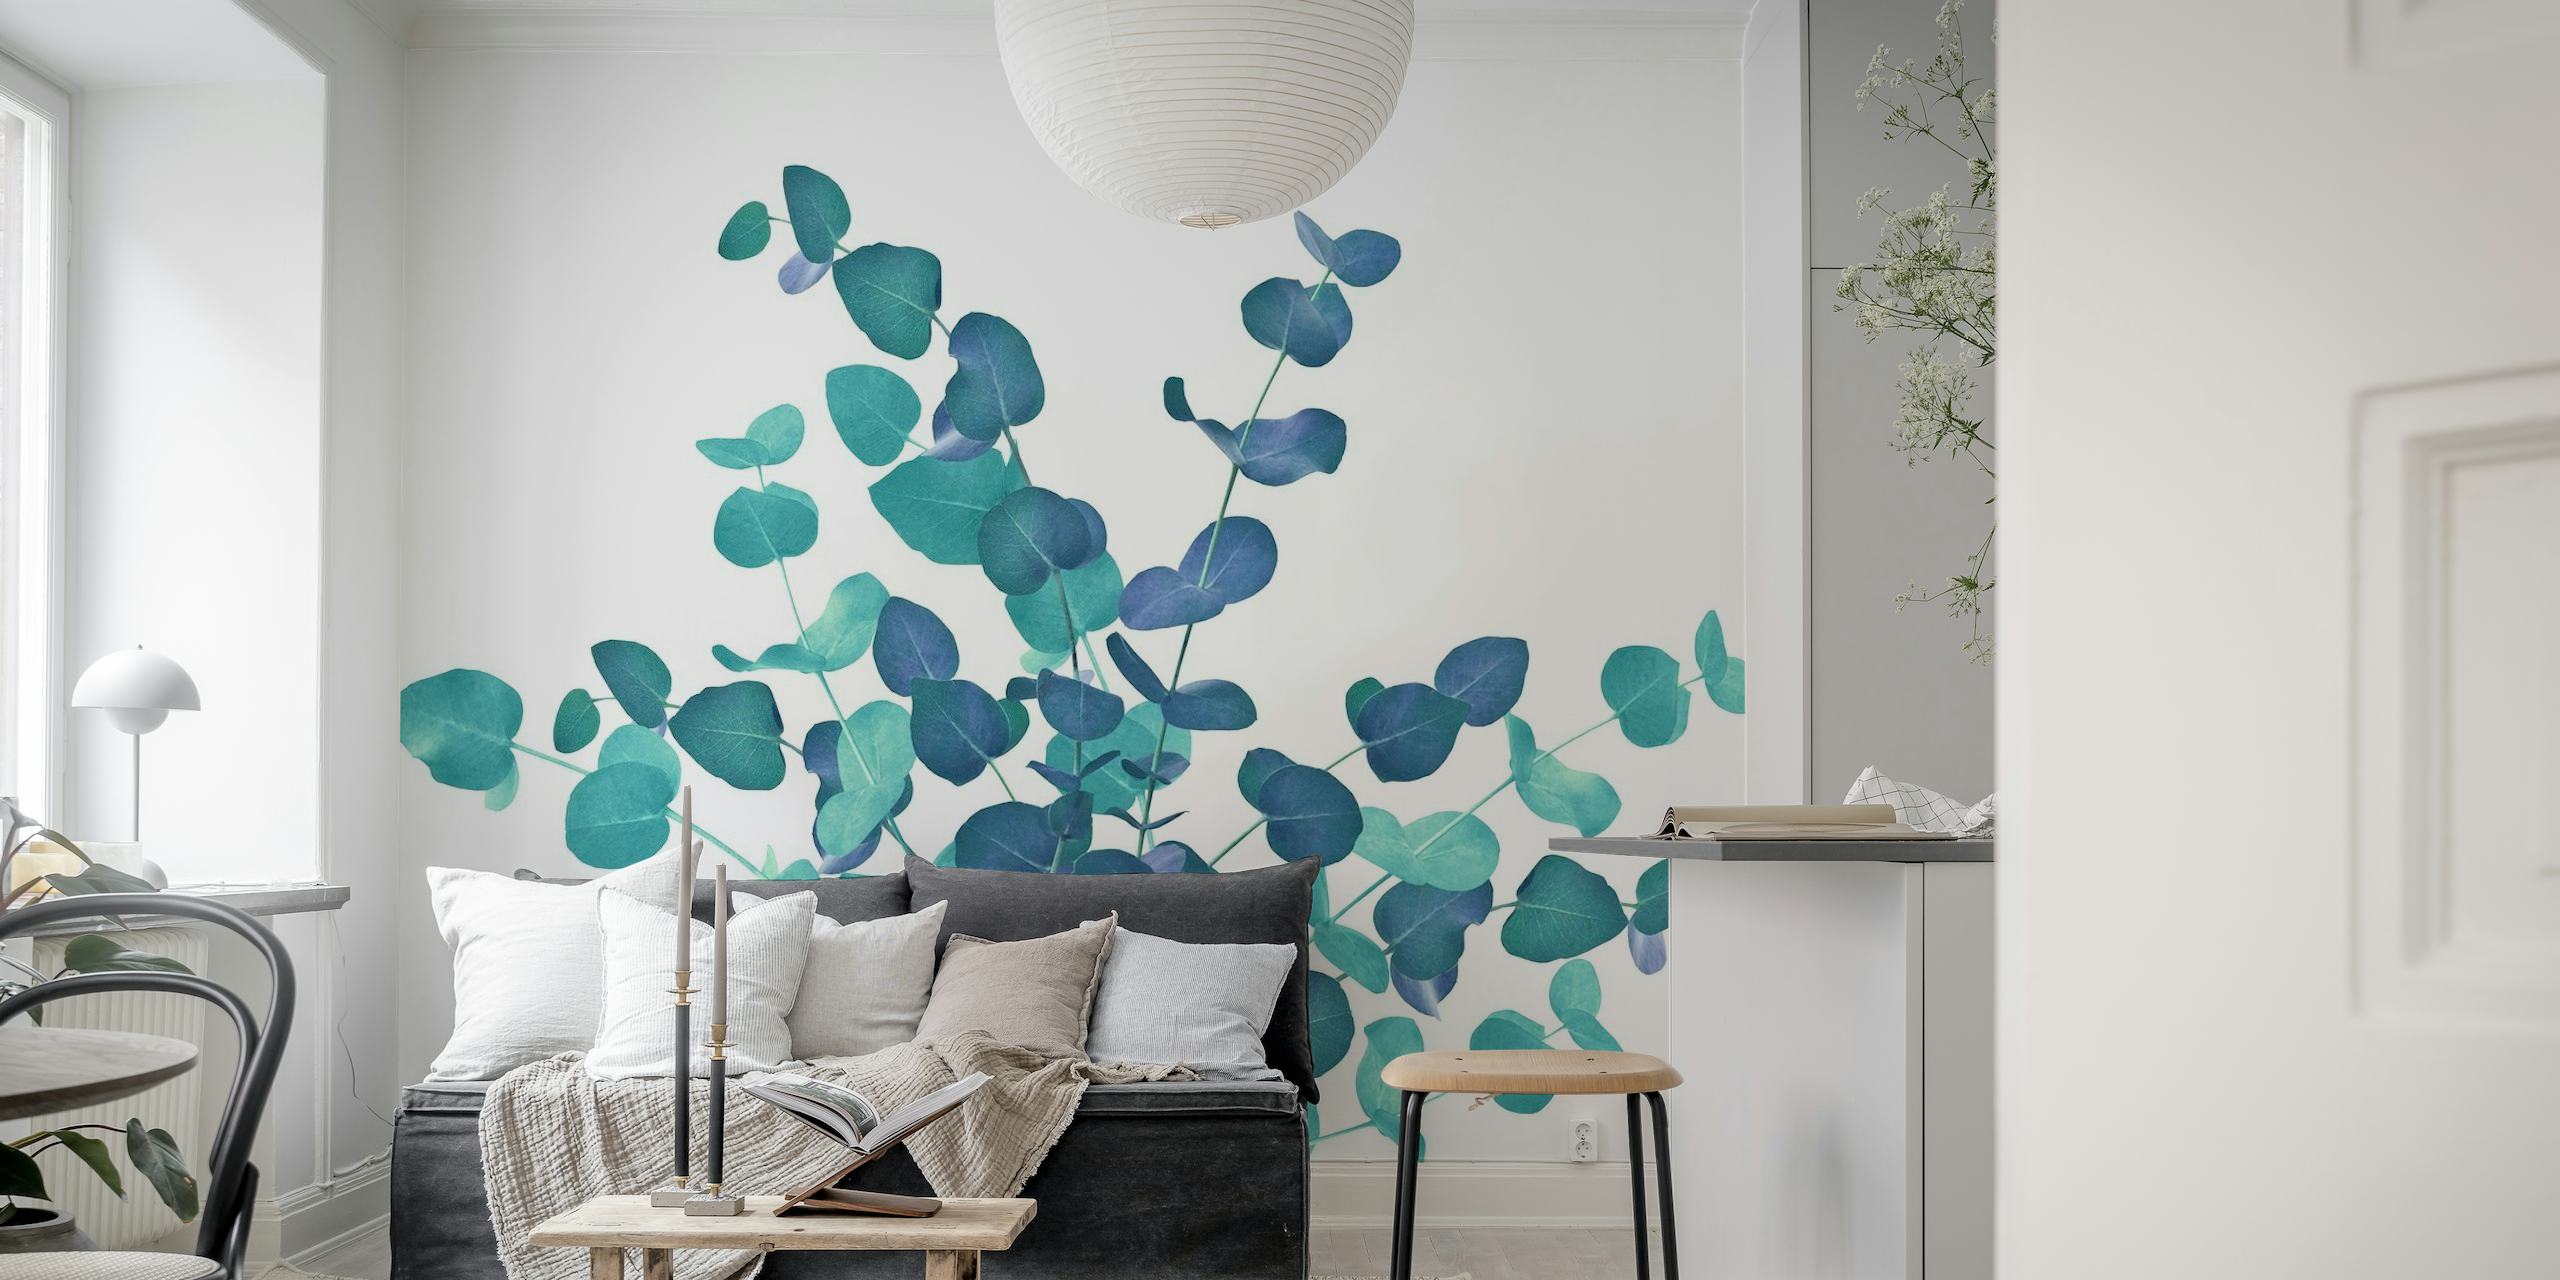 Eucalipto deixa mural de parede em tons de azul, criando uma exposição botânica serena